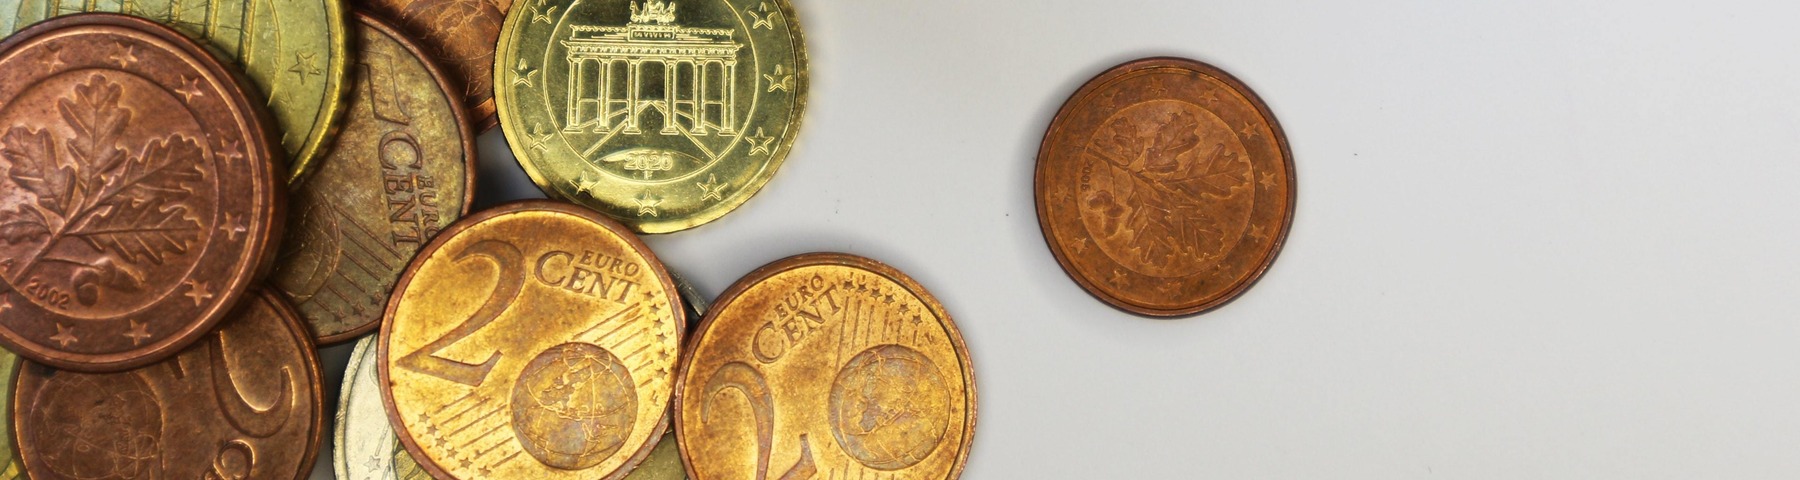 Euromünzen liegen auf einem weißen Tisch